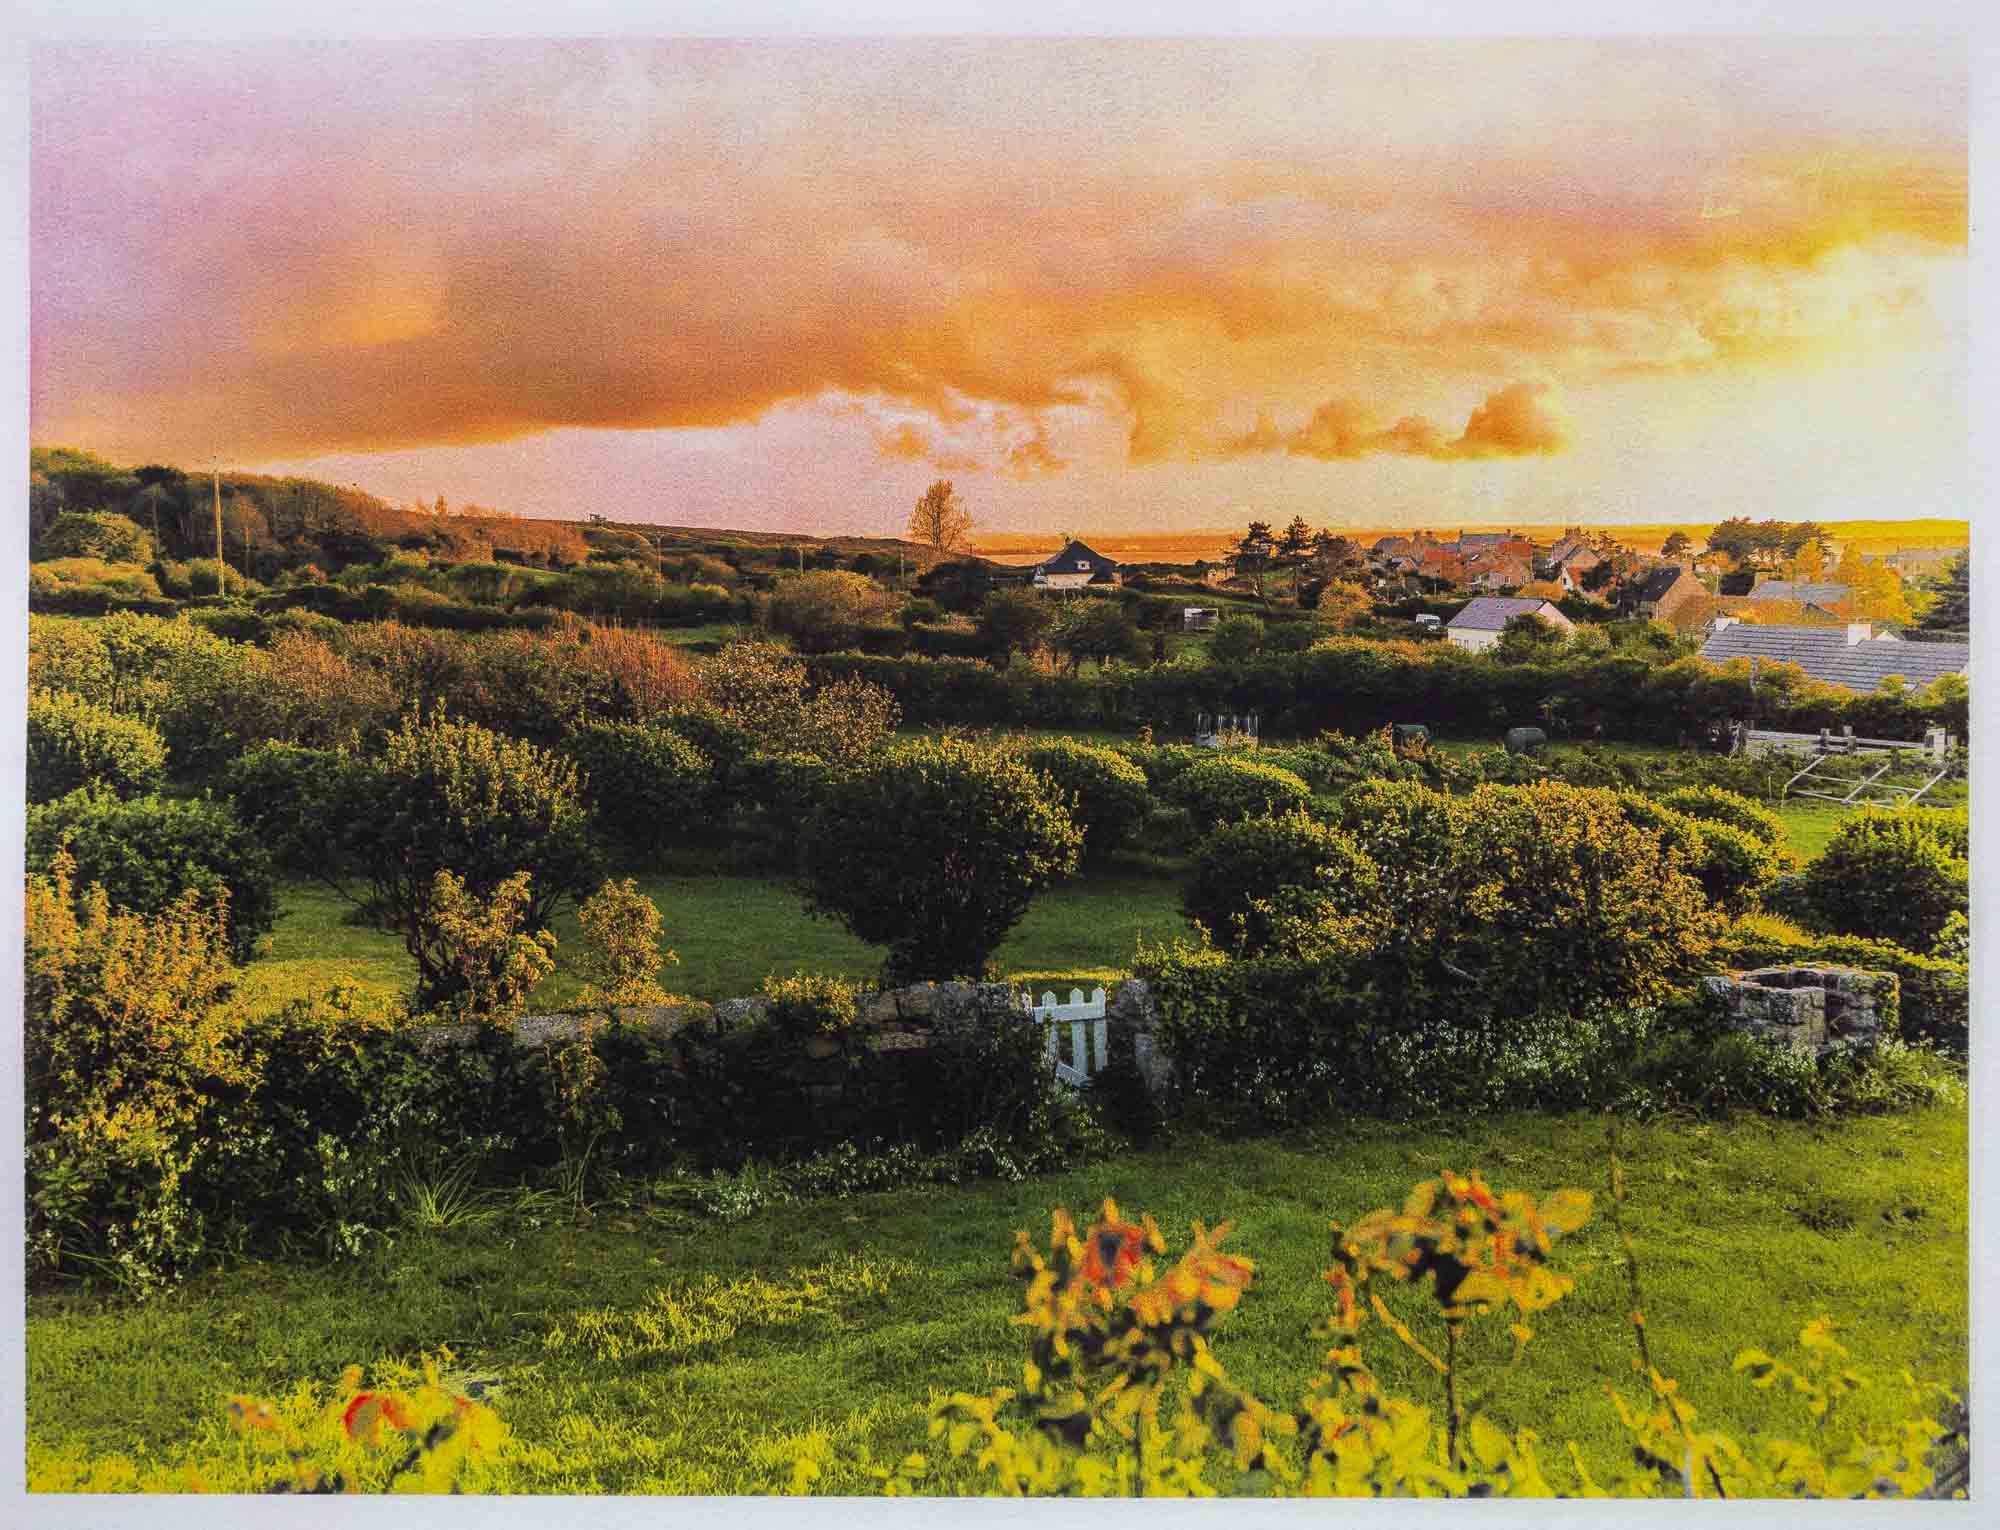 The Shire, Fermanville, Cotentin